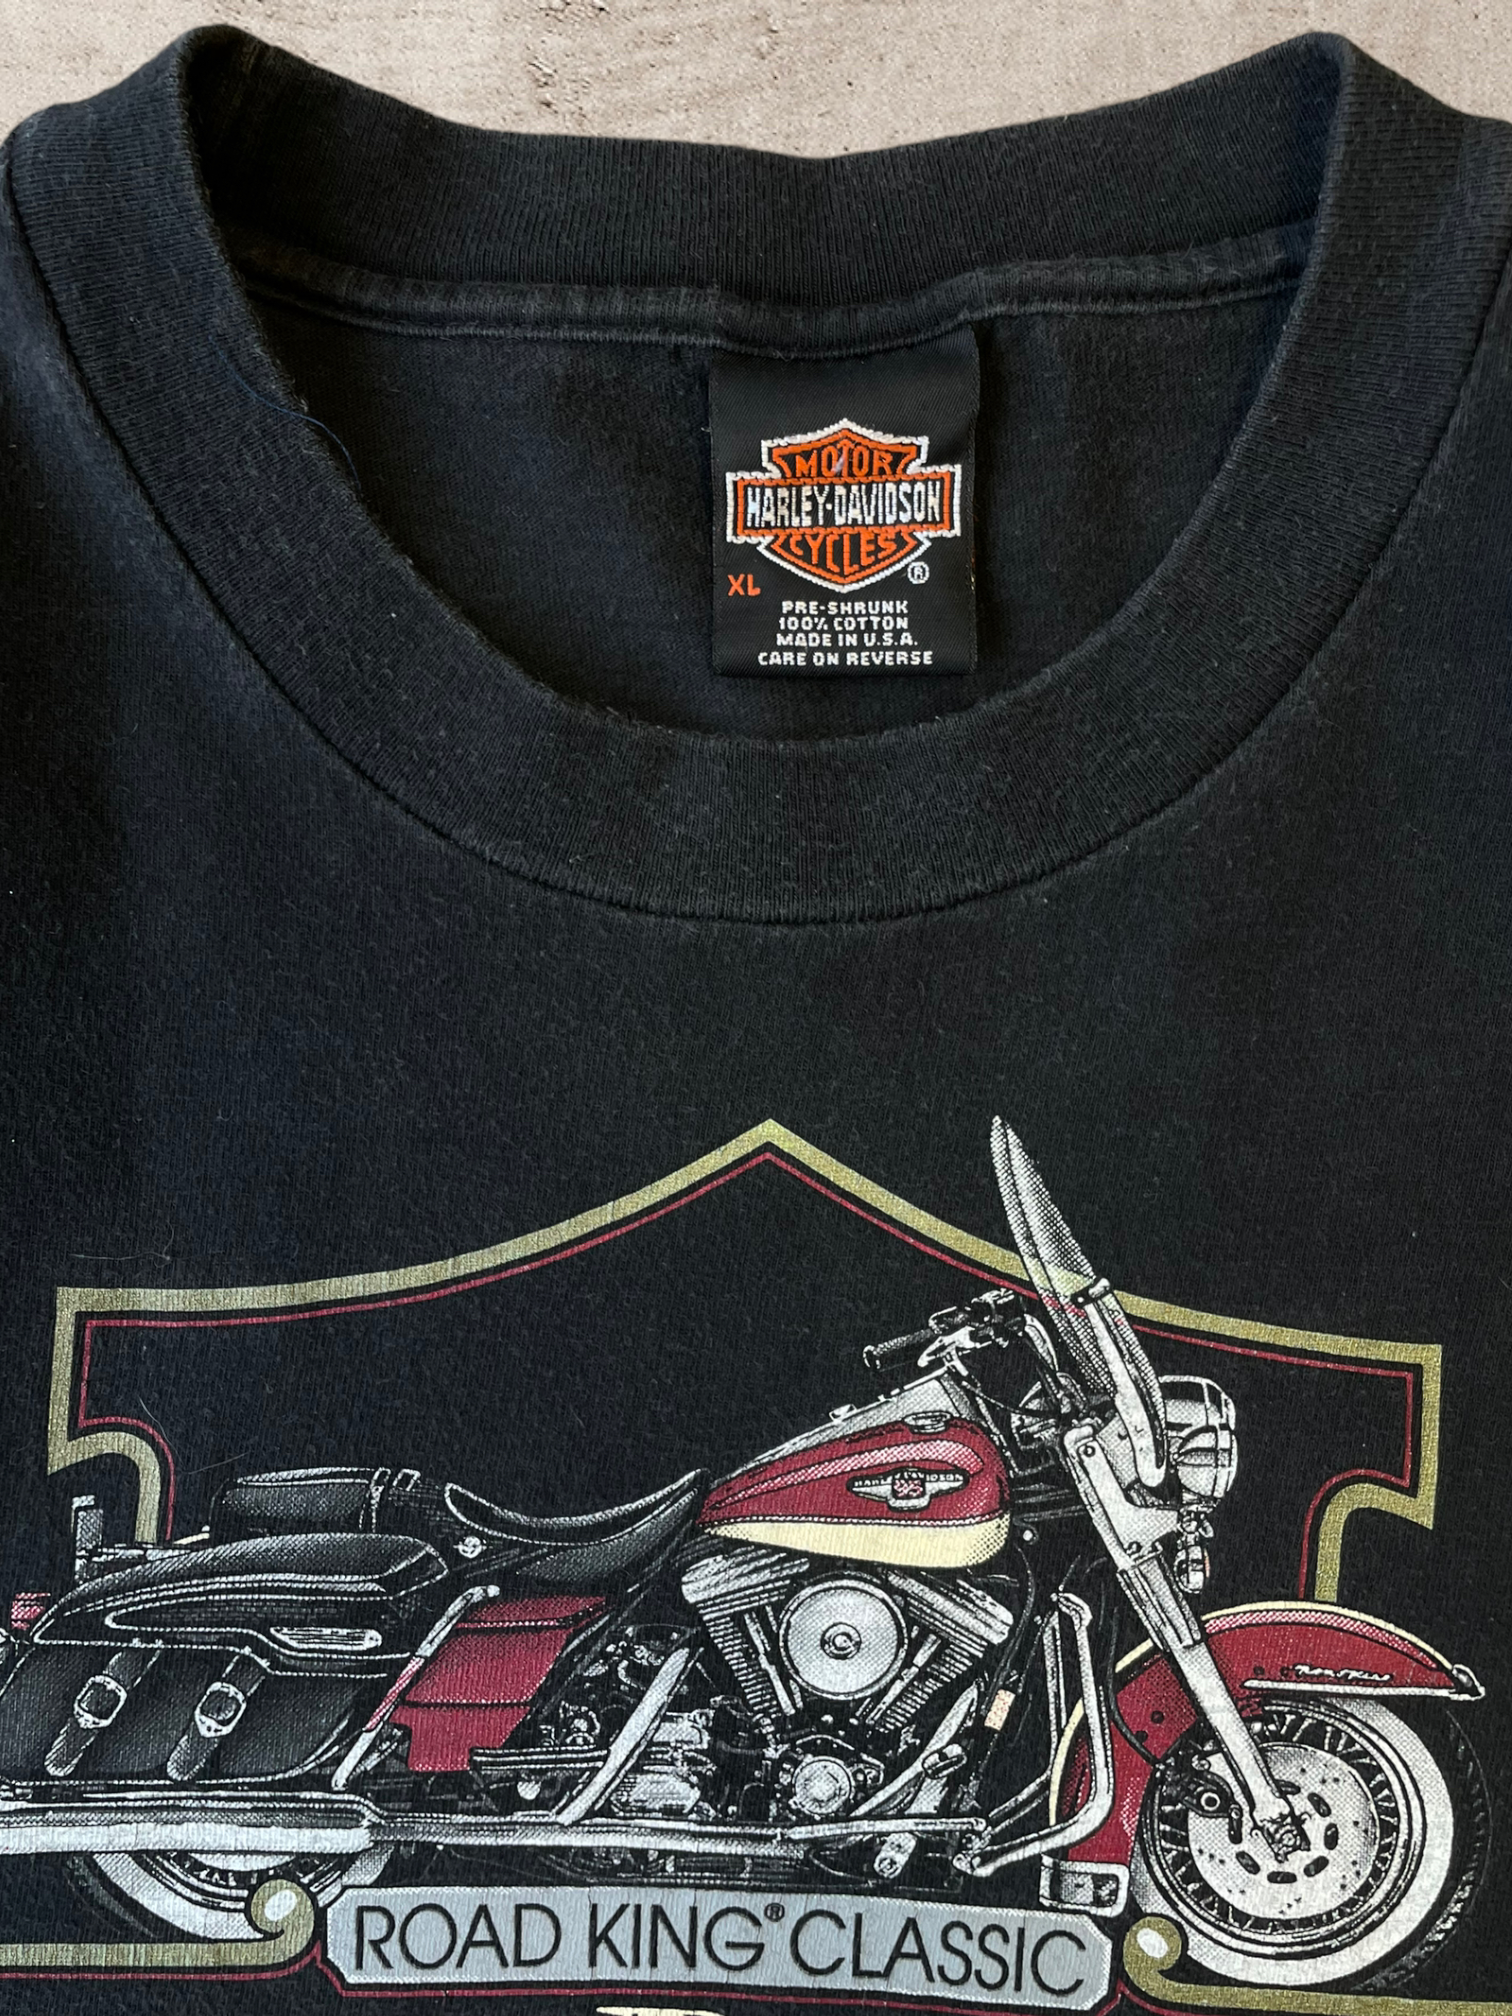 1998 Harley Davidson T-Shirt - X-Large